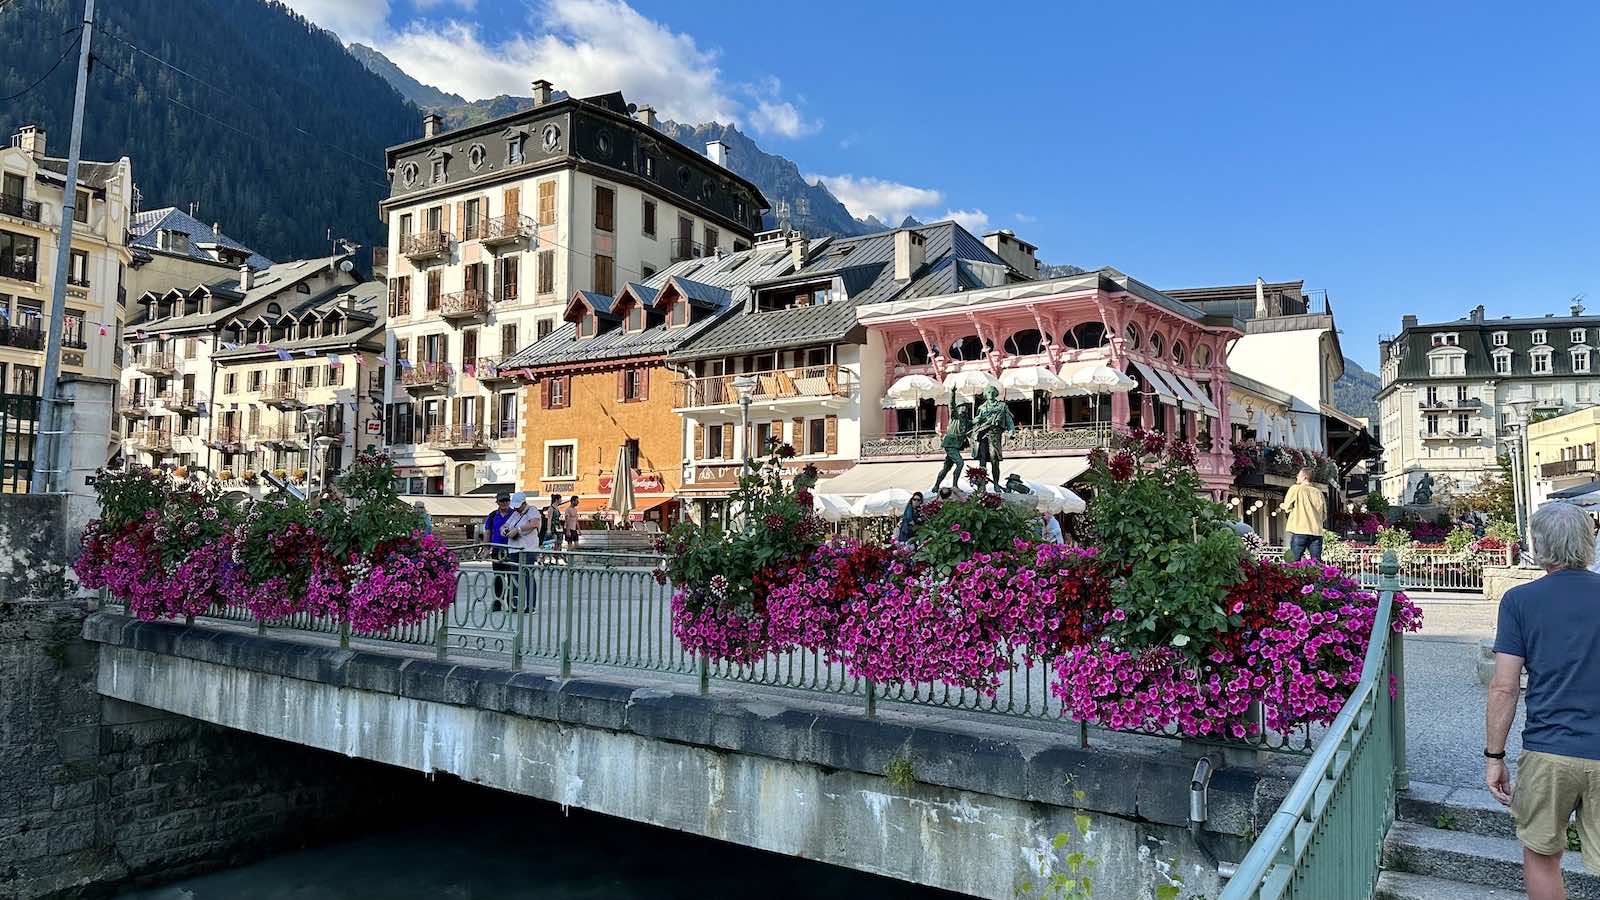 Die wunderschönen Gebäude in Chamonix-Mont-Blanc zeugen von der langjährigen Geschichte des Orts